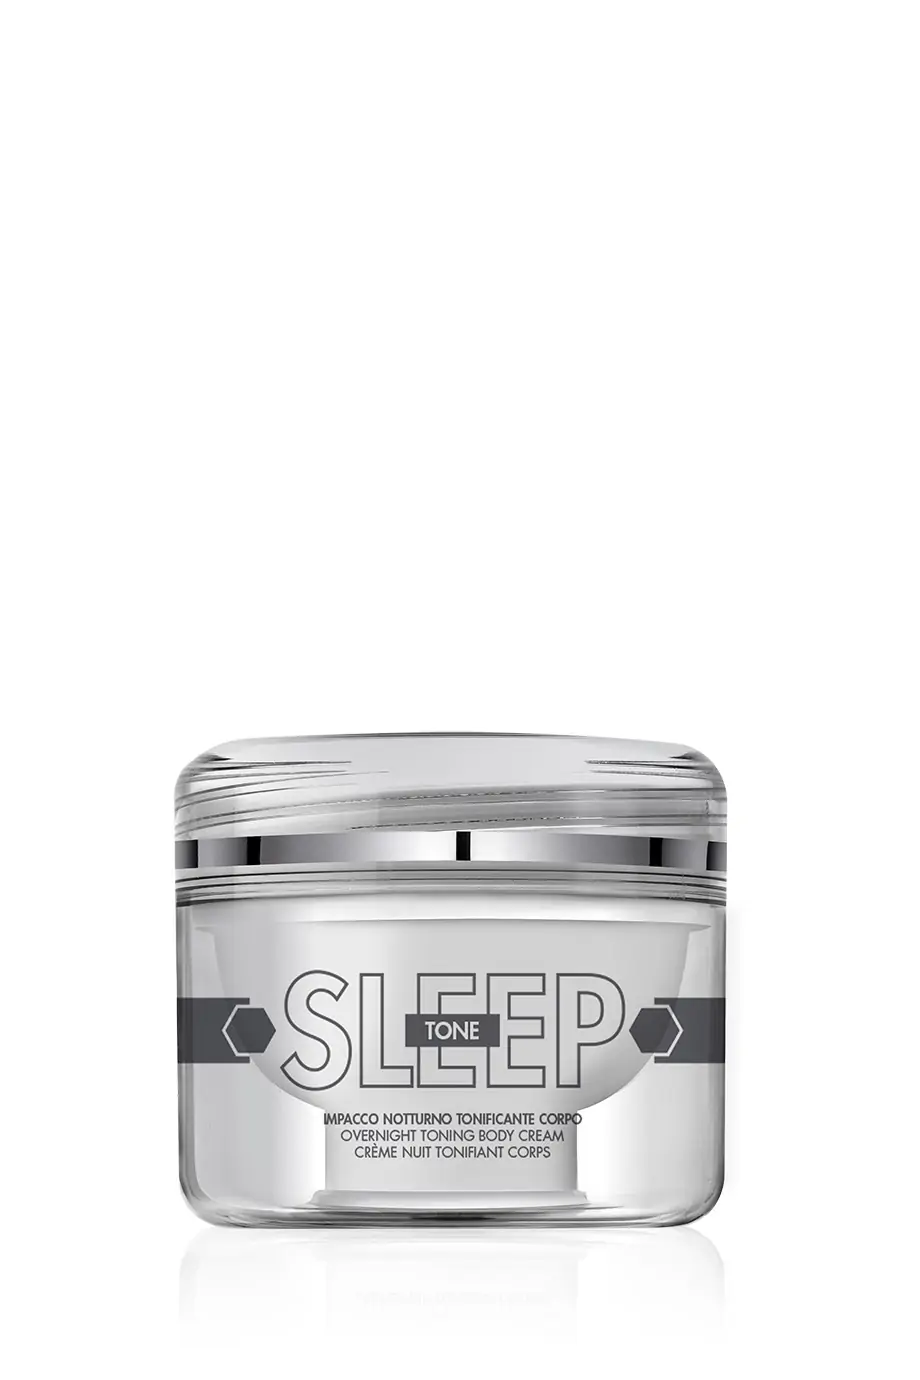 SleepTone Ночной тонизирующий крем для тела в интернет-магазине Authentica.love